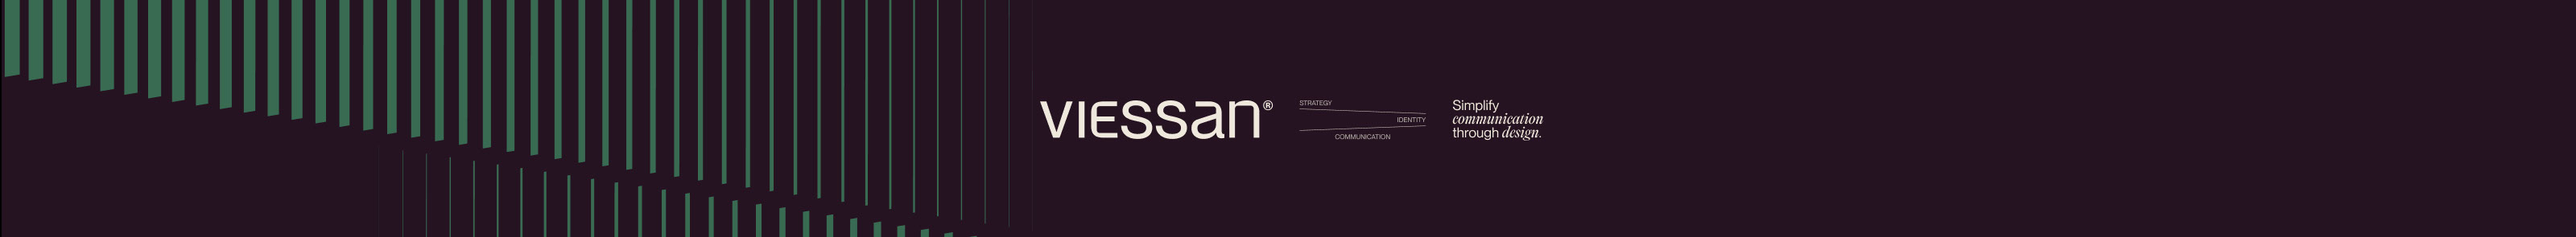 Viessan Studio のプロファイルバナー